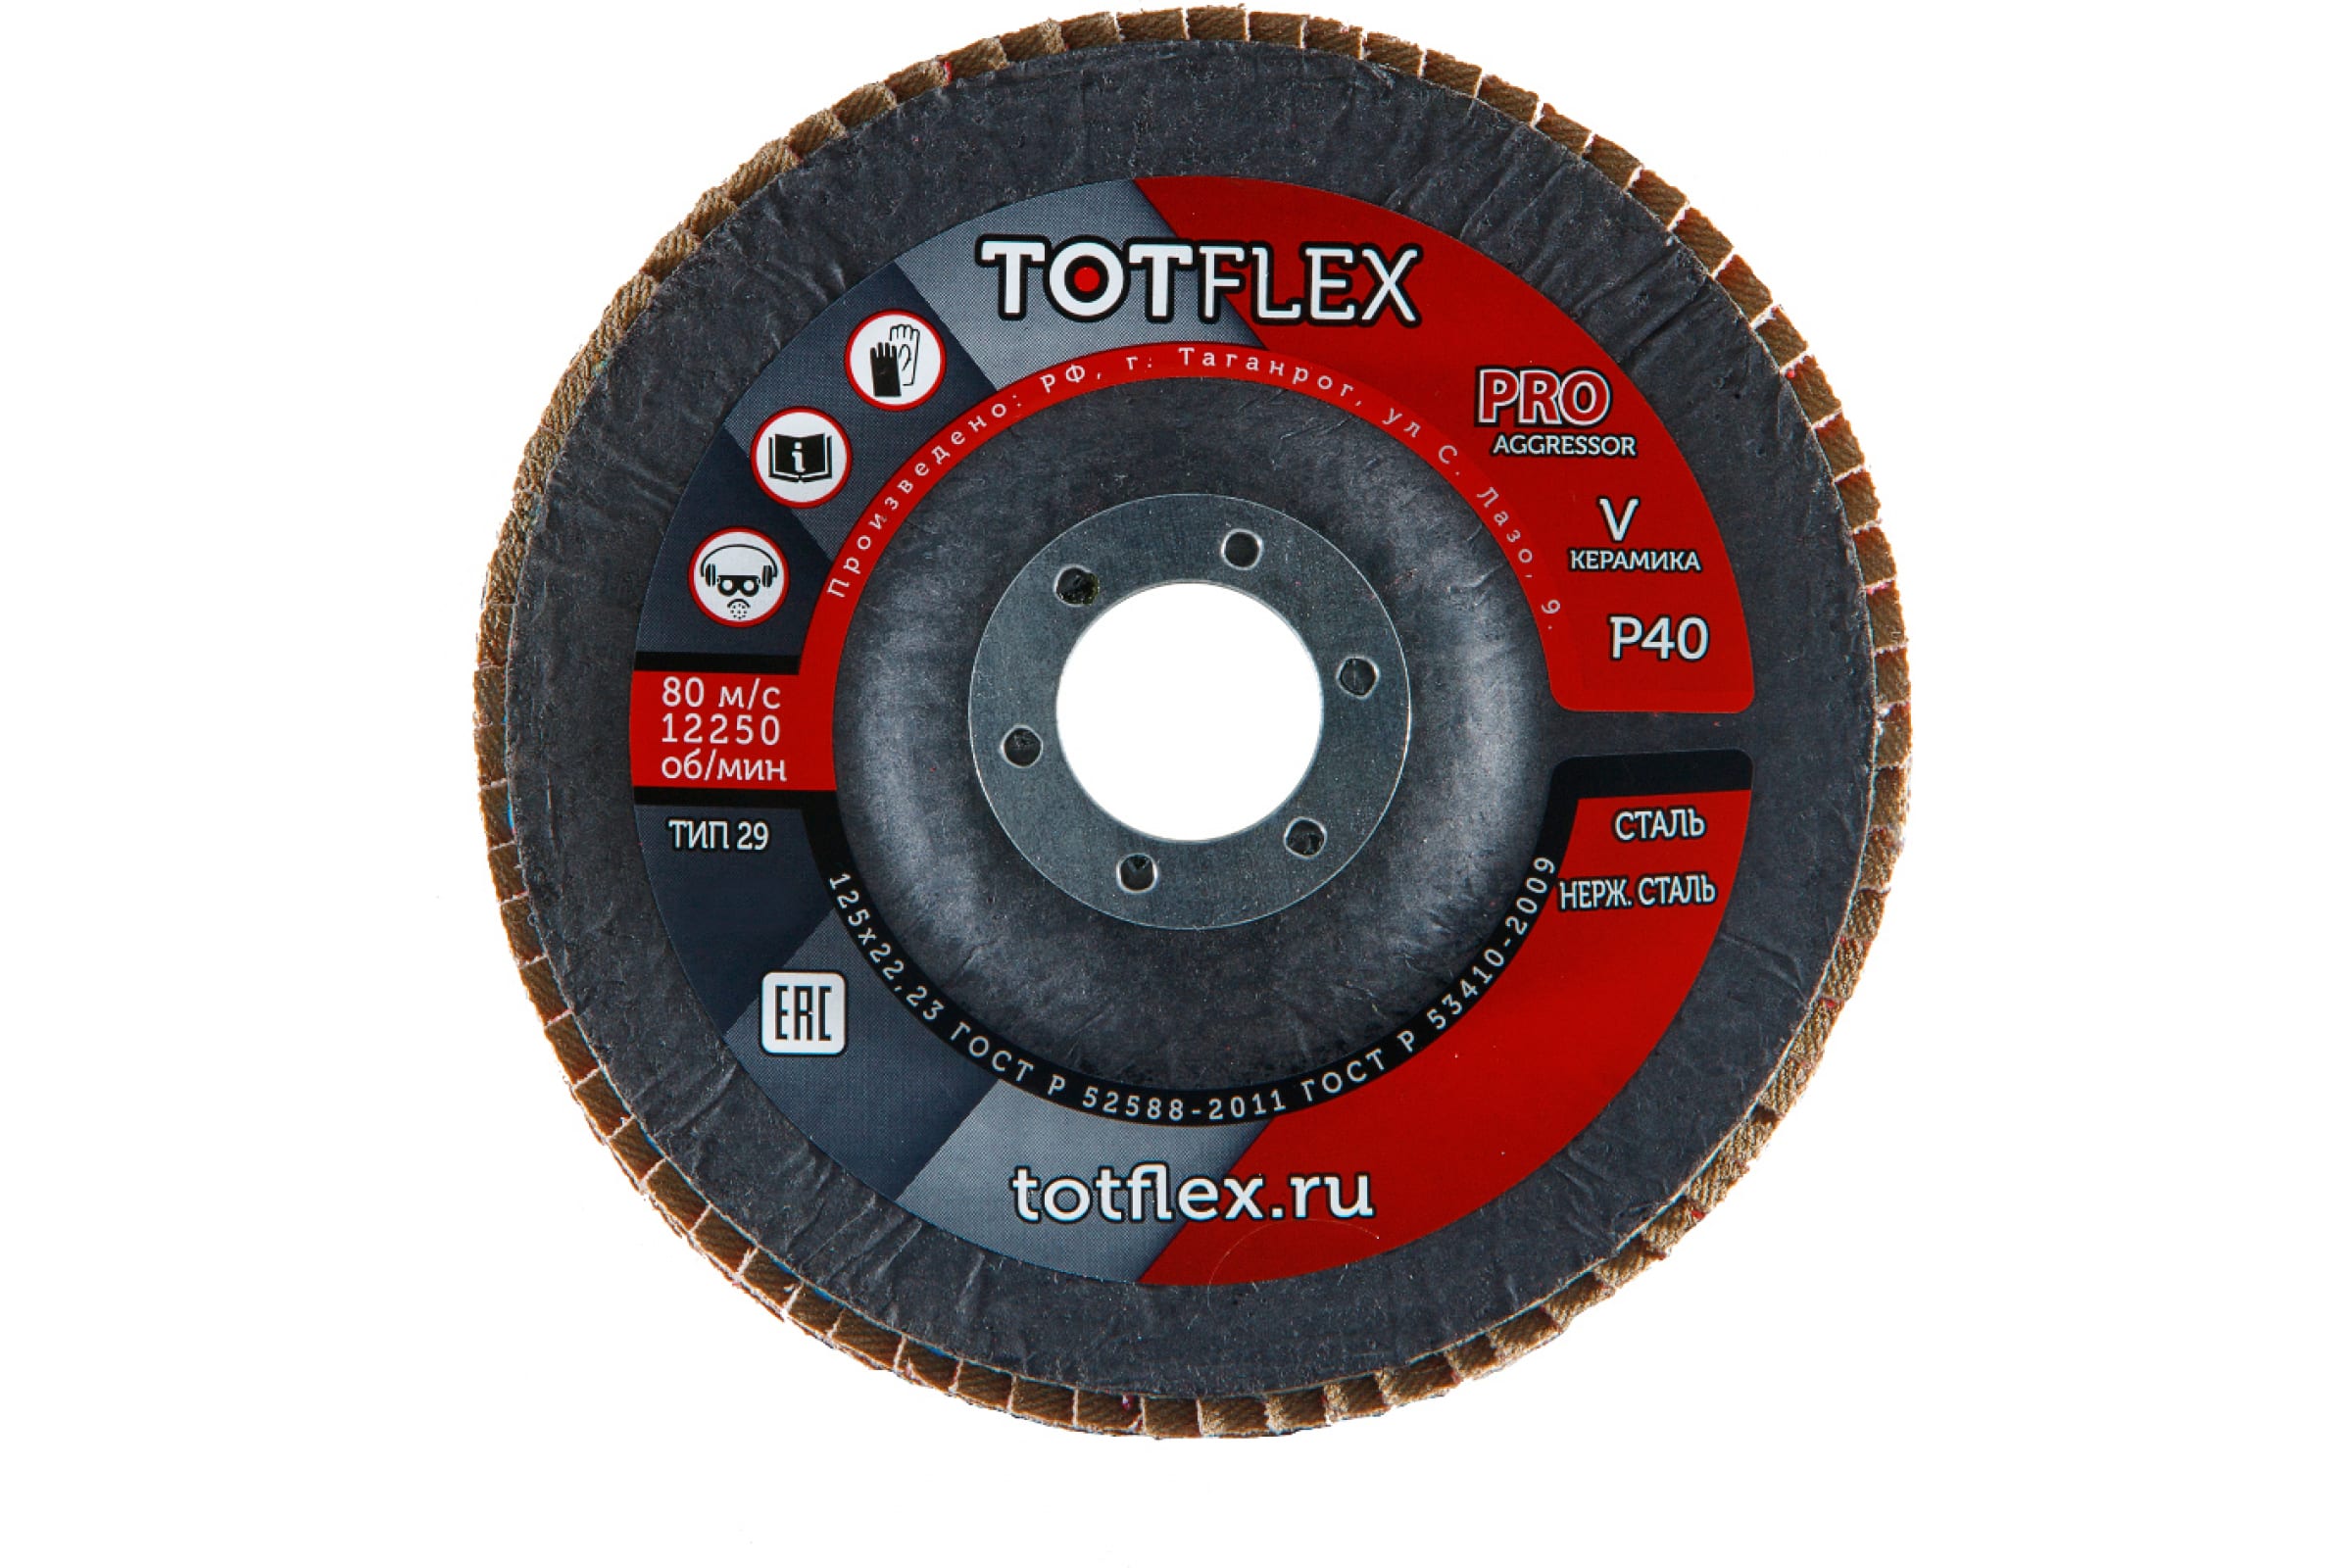 Totflex Круг лепестковый торцевой AGGRESSOR-PRO 2 125x22 V P40 4631148128248 торцевой лепестковый круг totflex